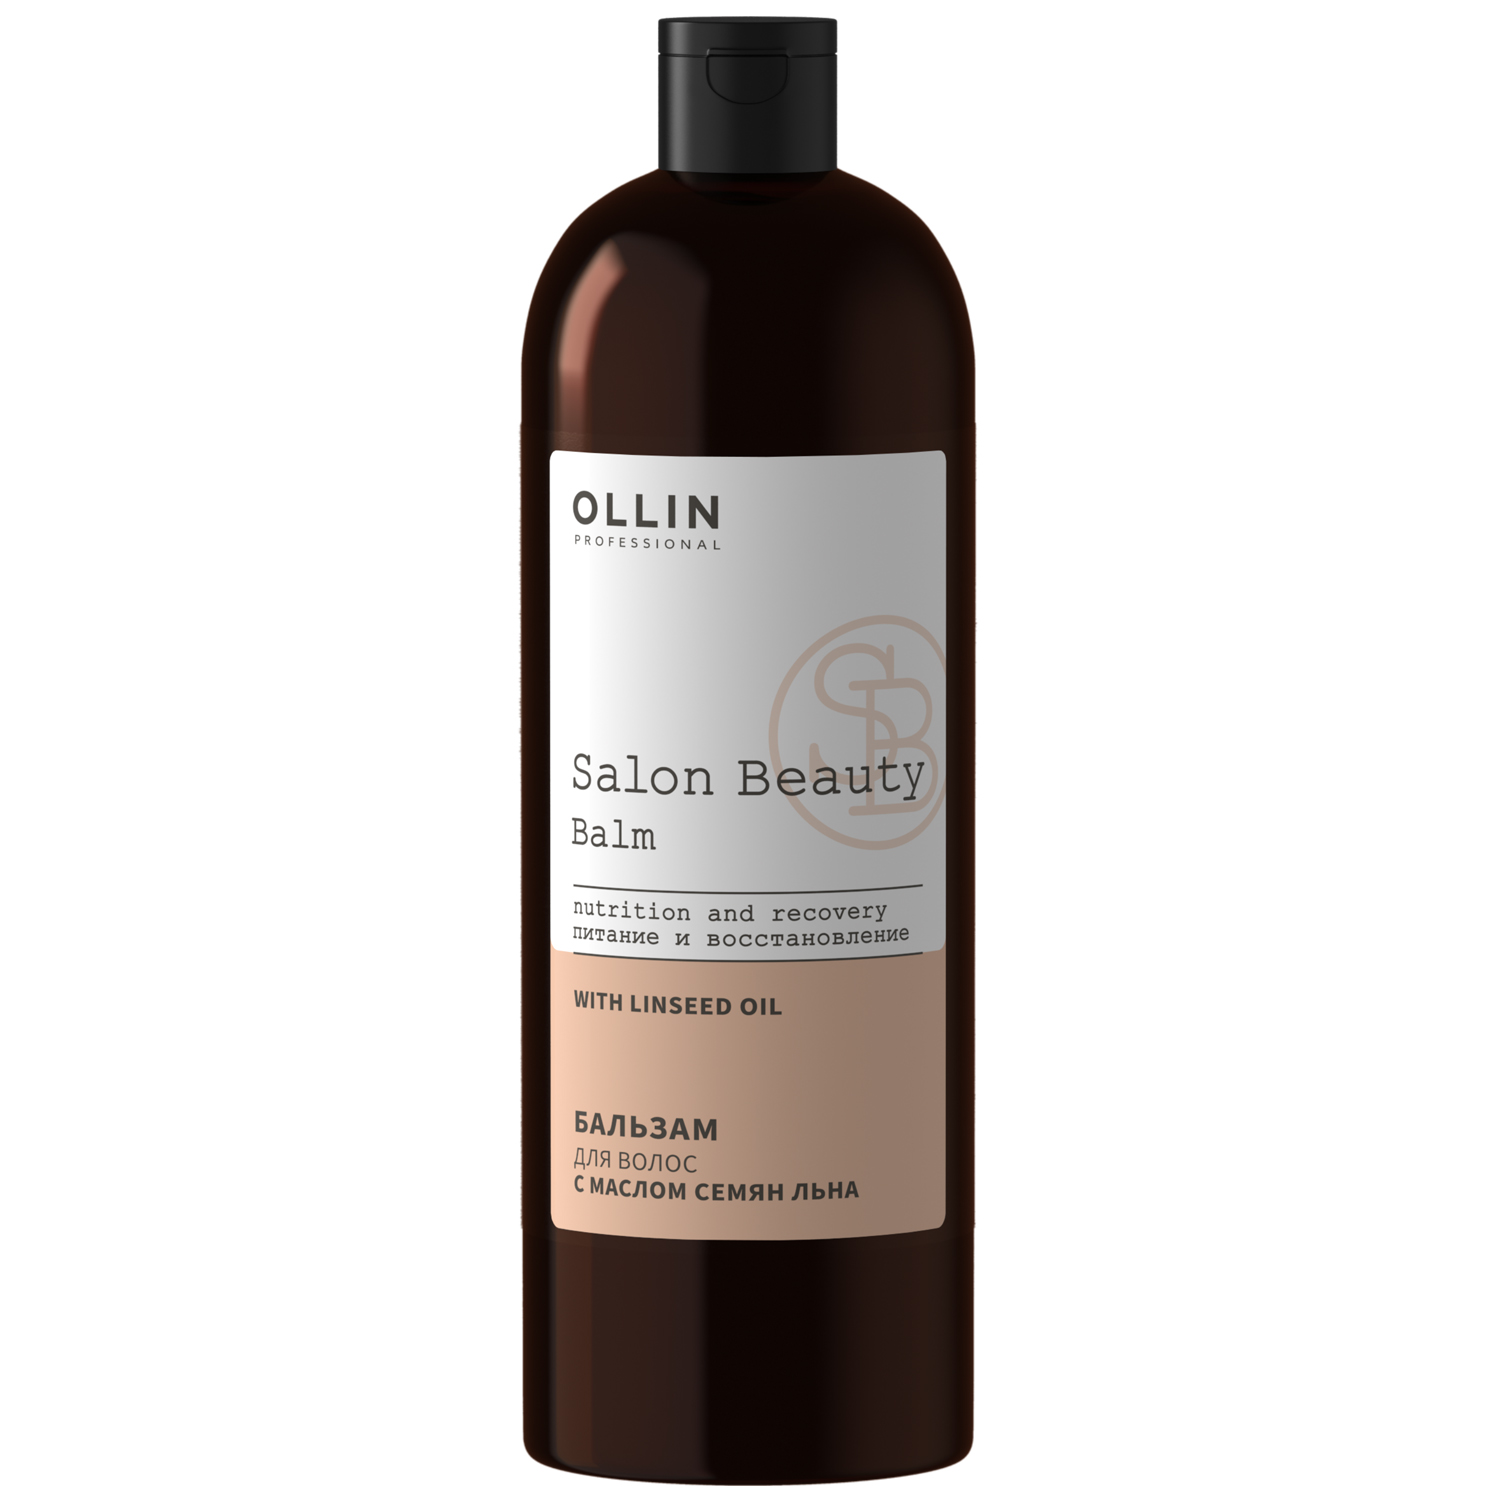 Ollin Professional Бальзам для волос с маслом семян льна, 10